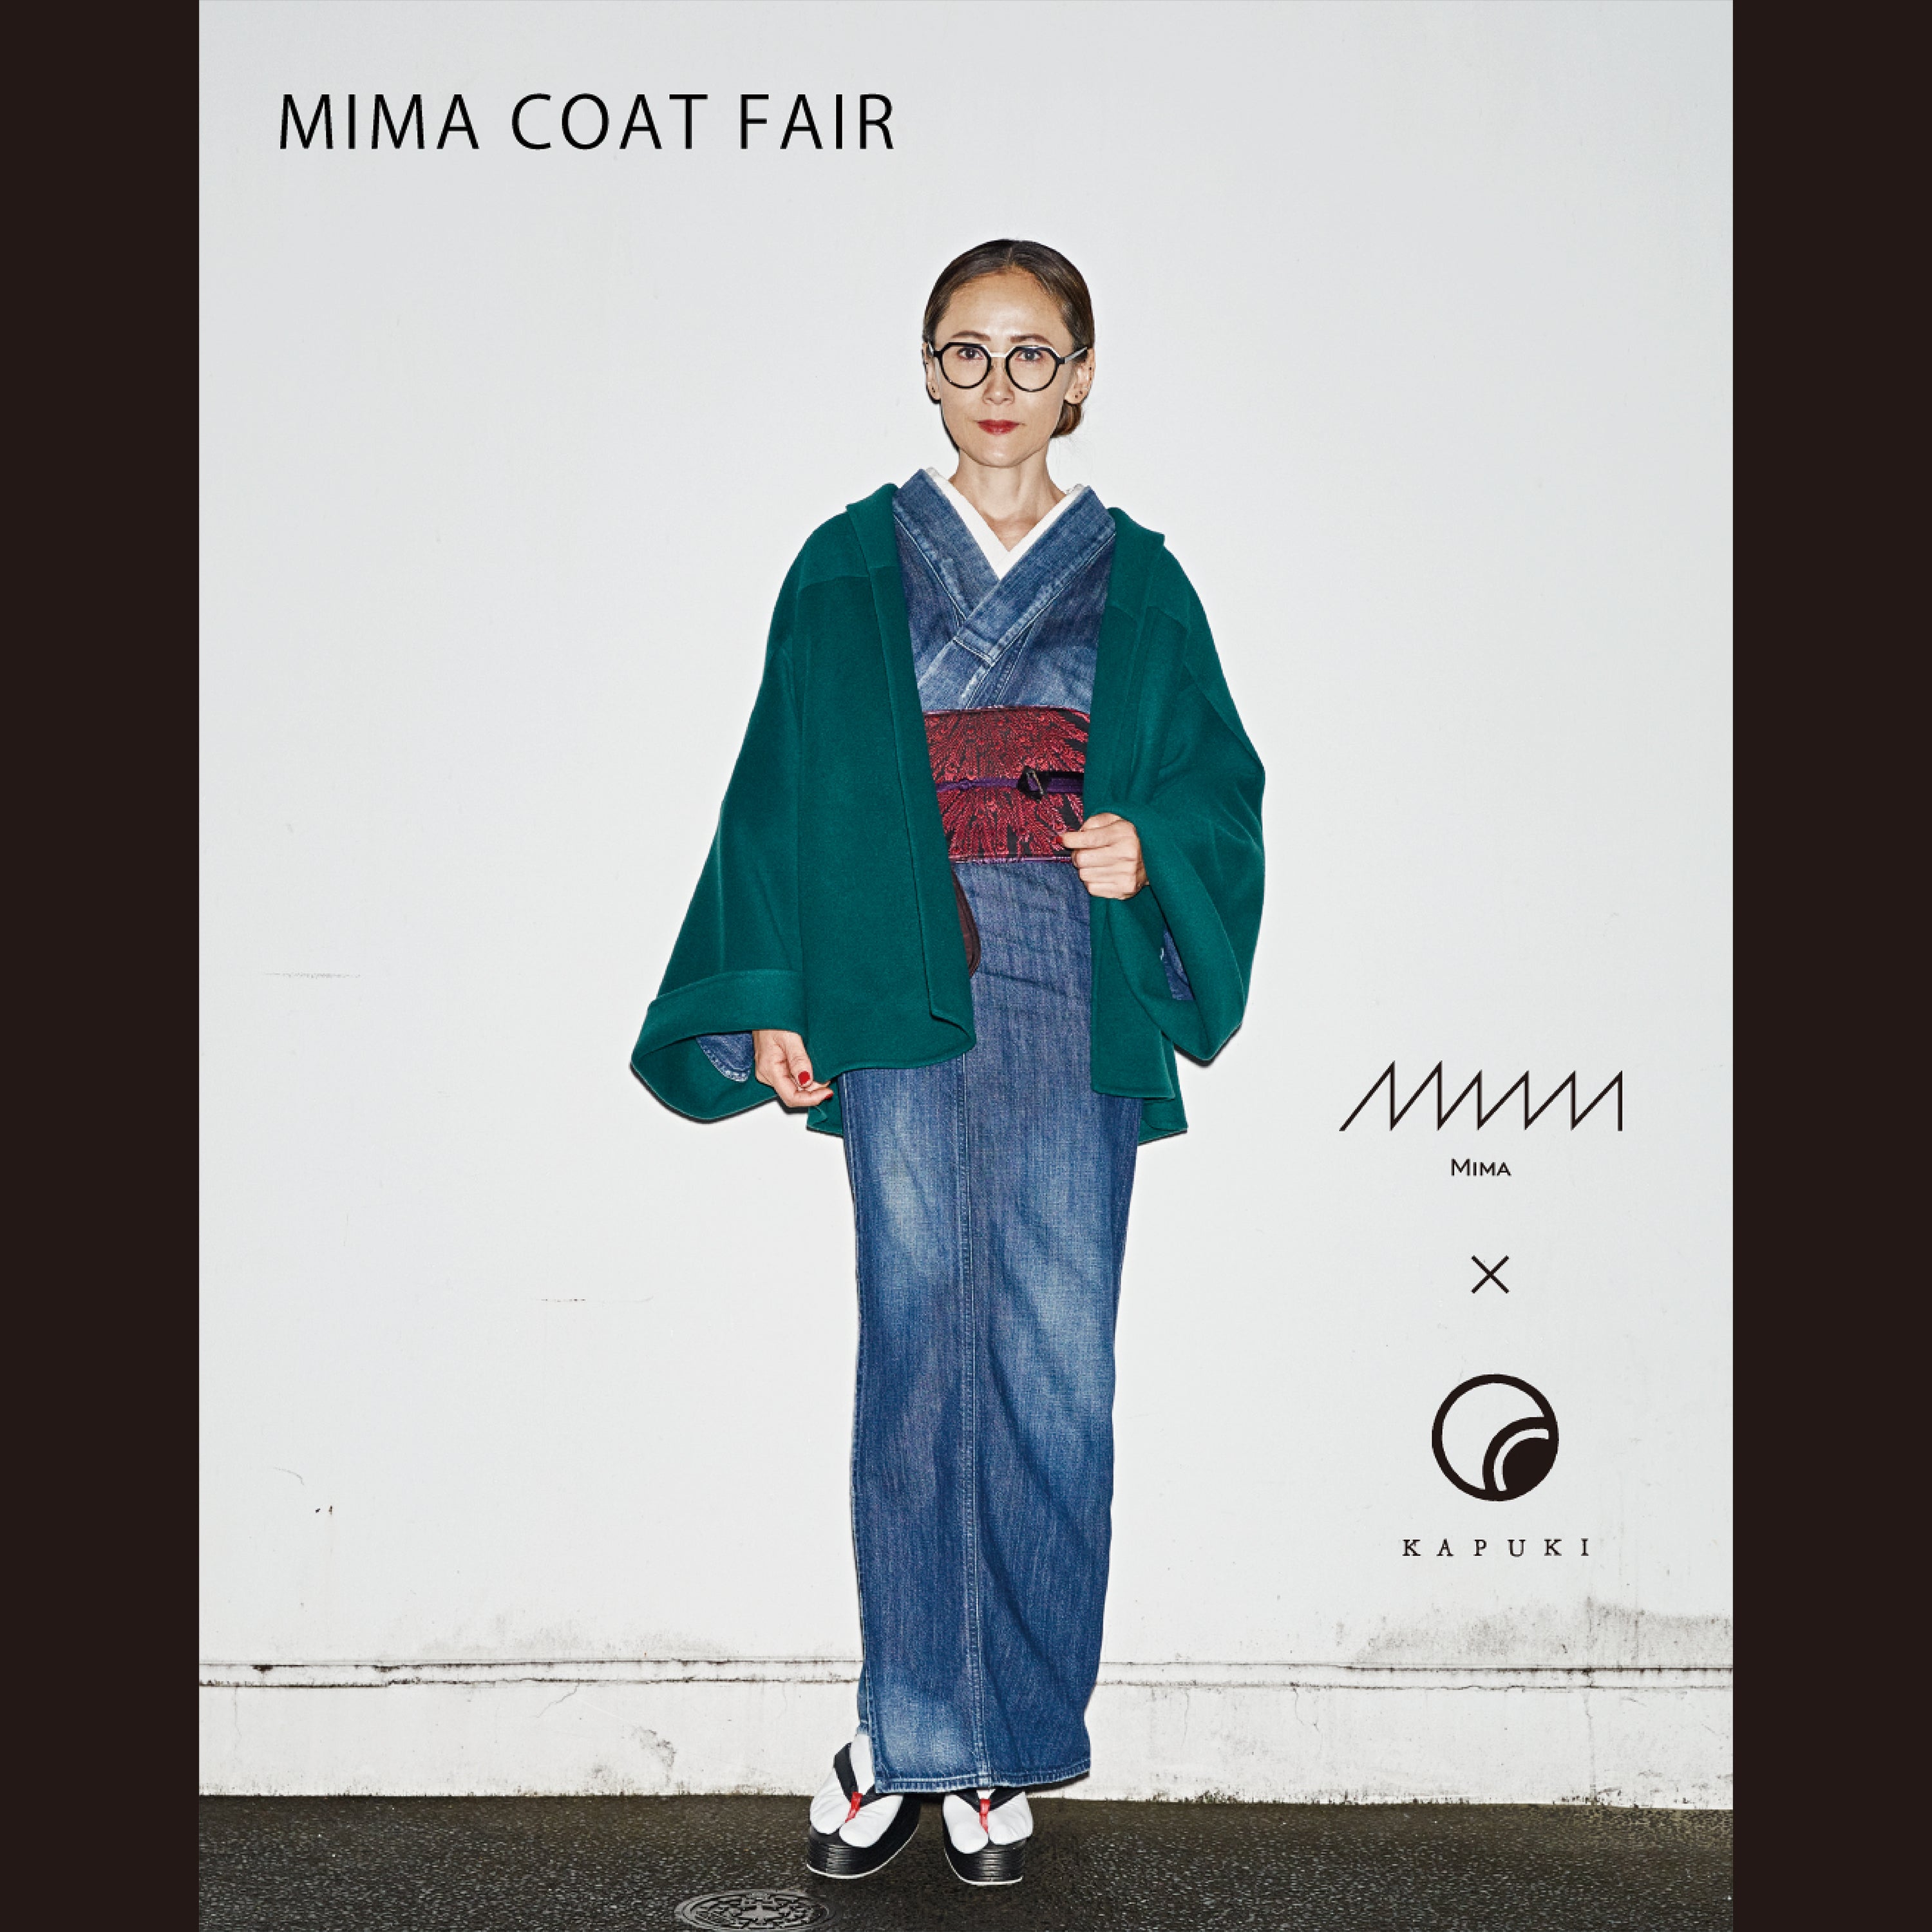 MIMA COAT FAIR 開催!! 1月14日(土)〜1月17日(火)